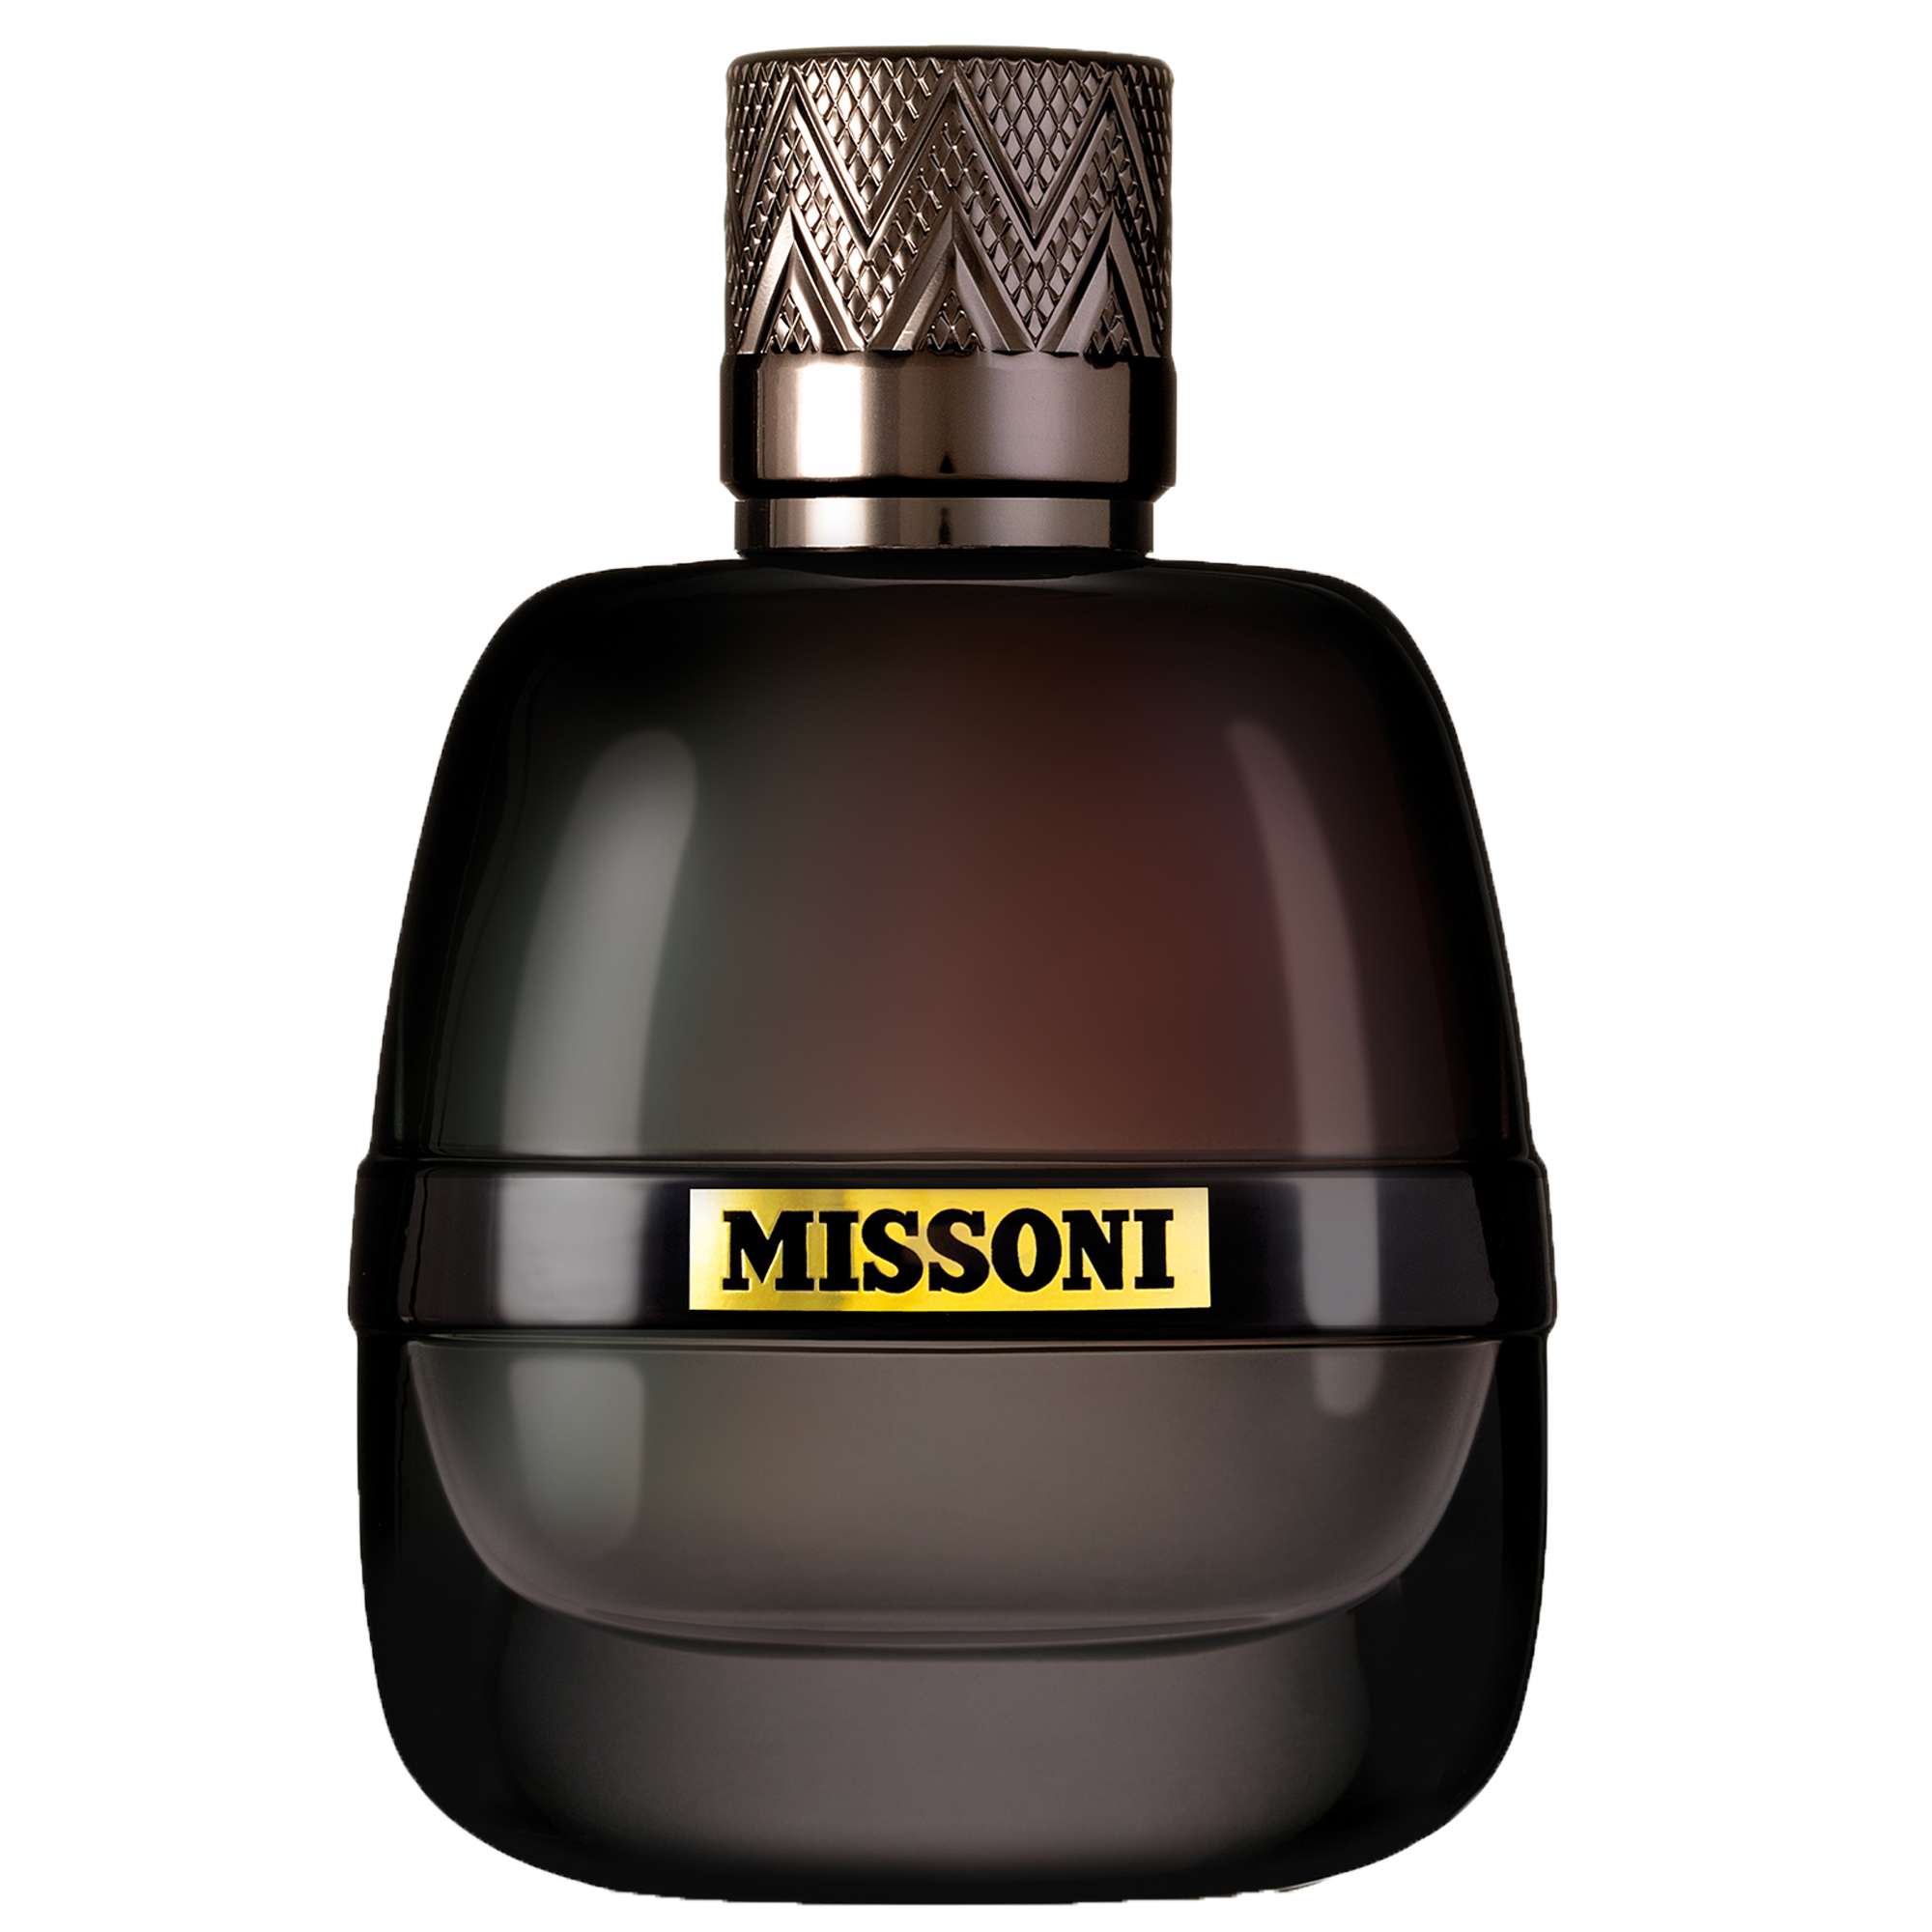 Image of Missoni Parfum Pour Homme Eau de Parfum Spray 100ml